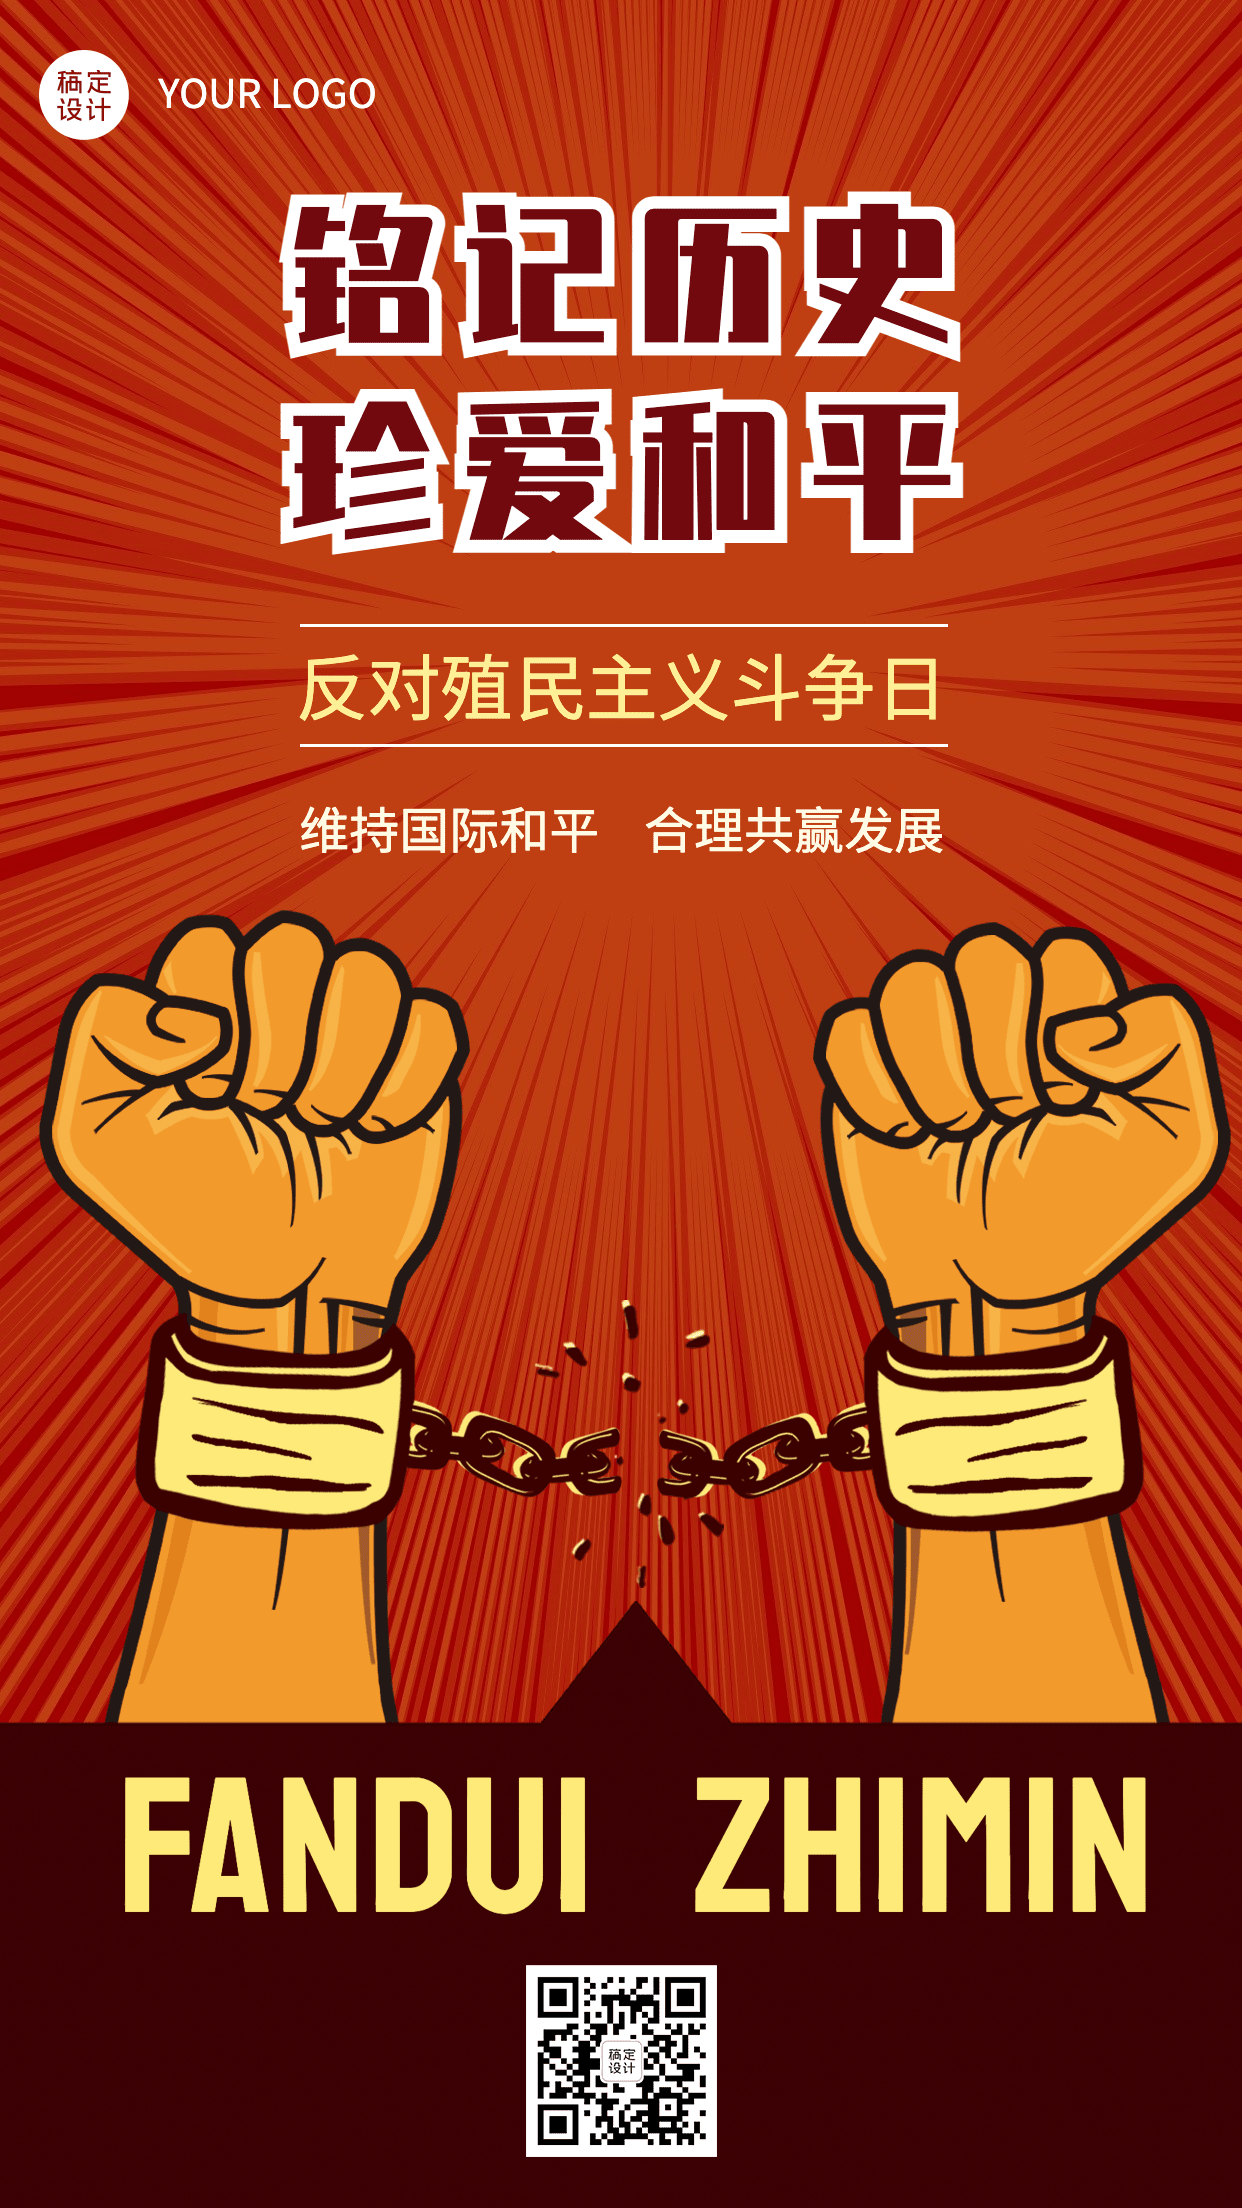 2.21反殖民主义斗争日公益宣传复古手绘手机海报预览效果